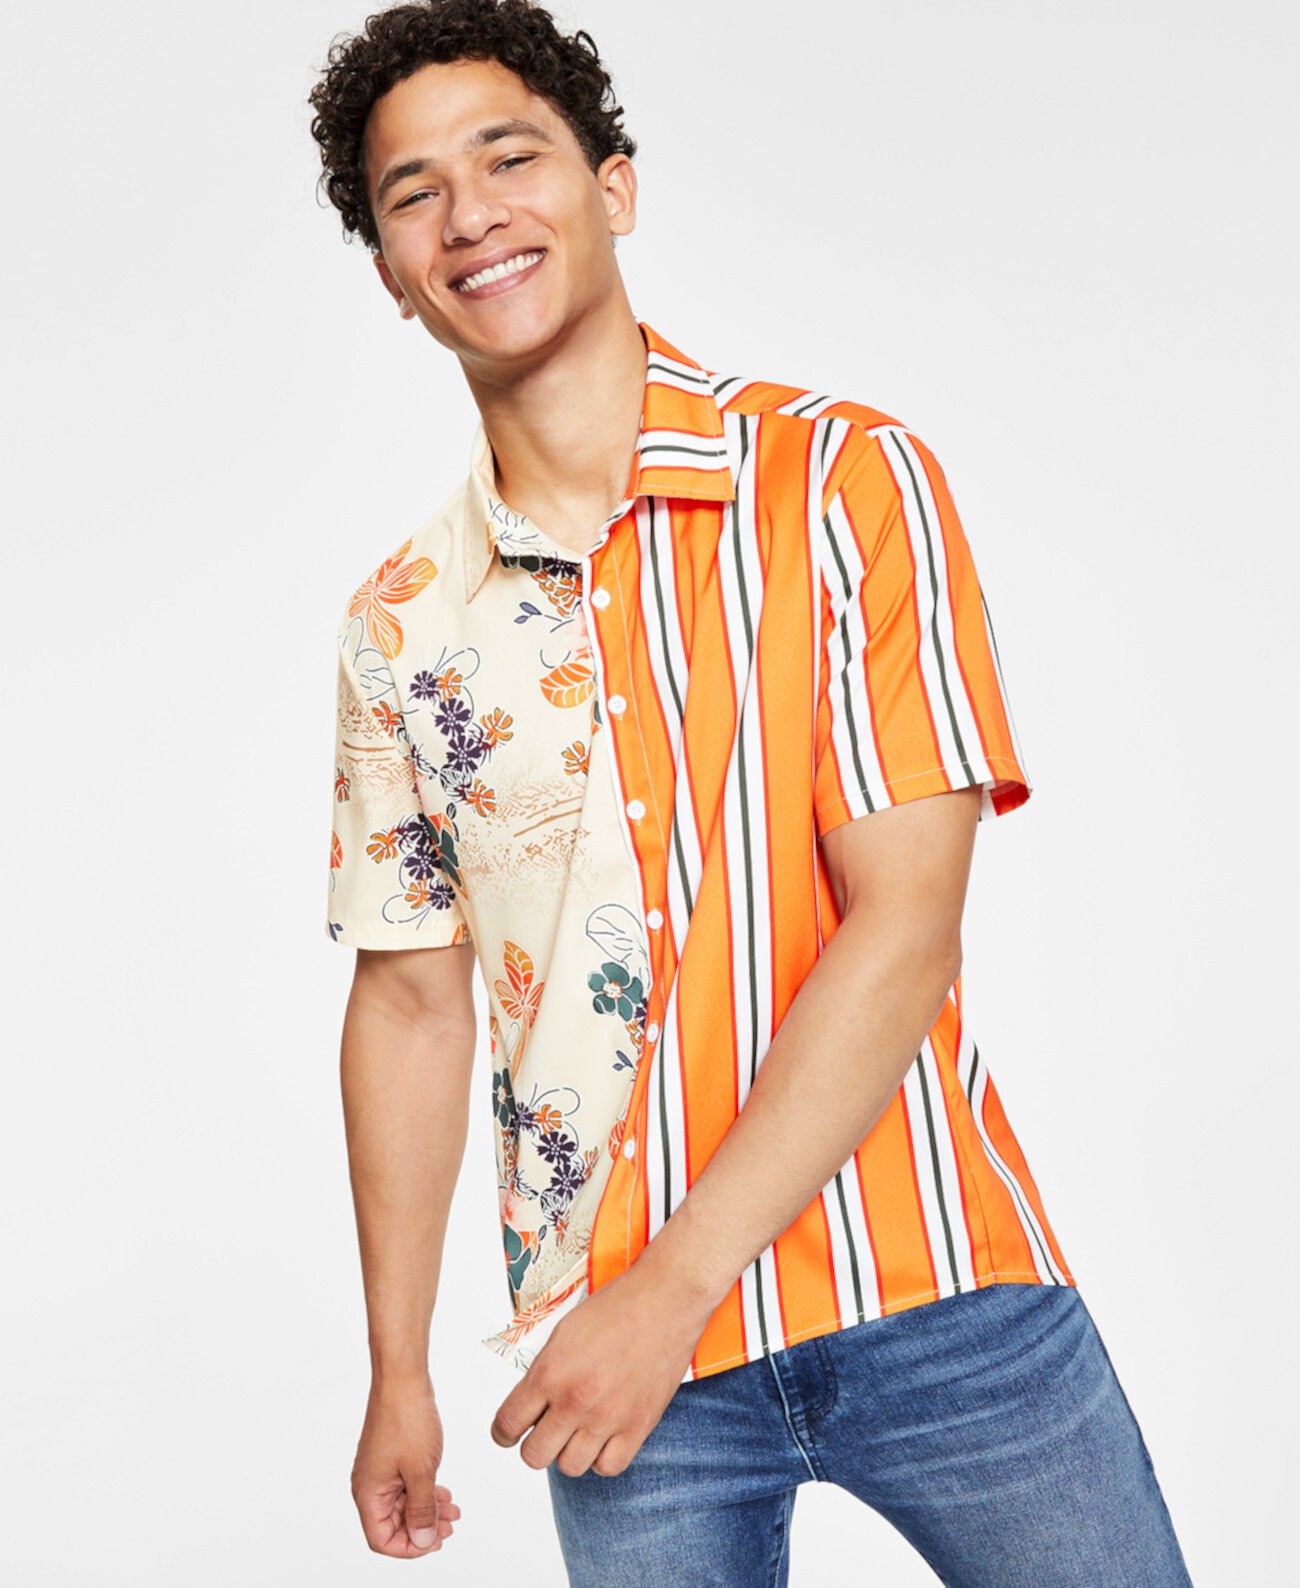 Мужская рубашка в цветочную полоску с цветными блоками Denim Bay